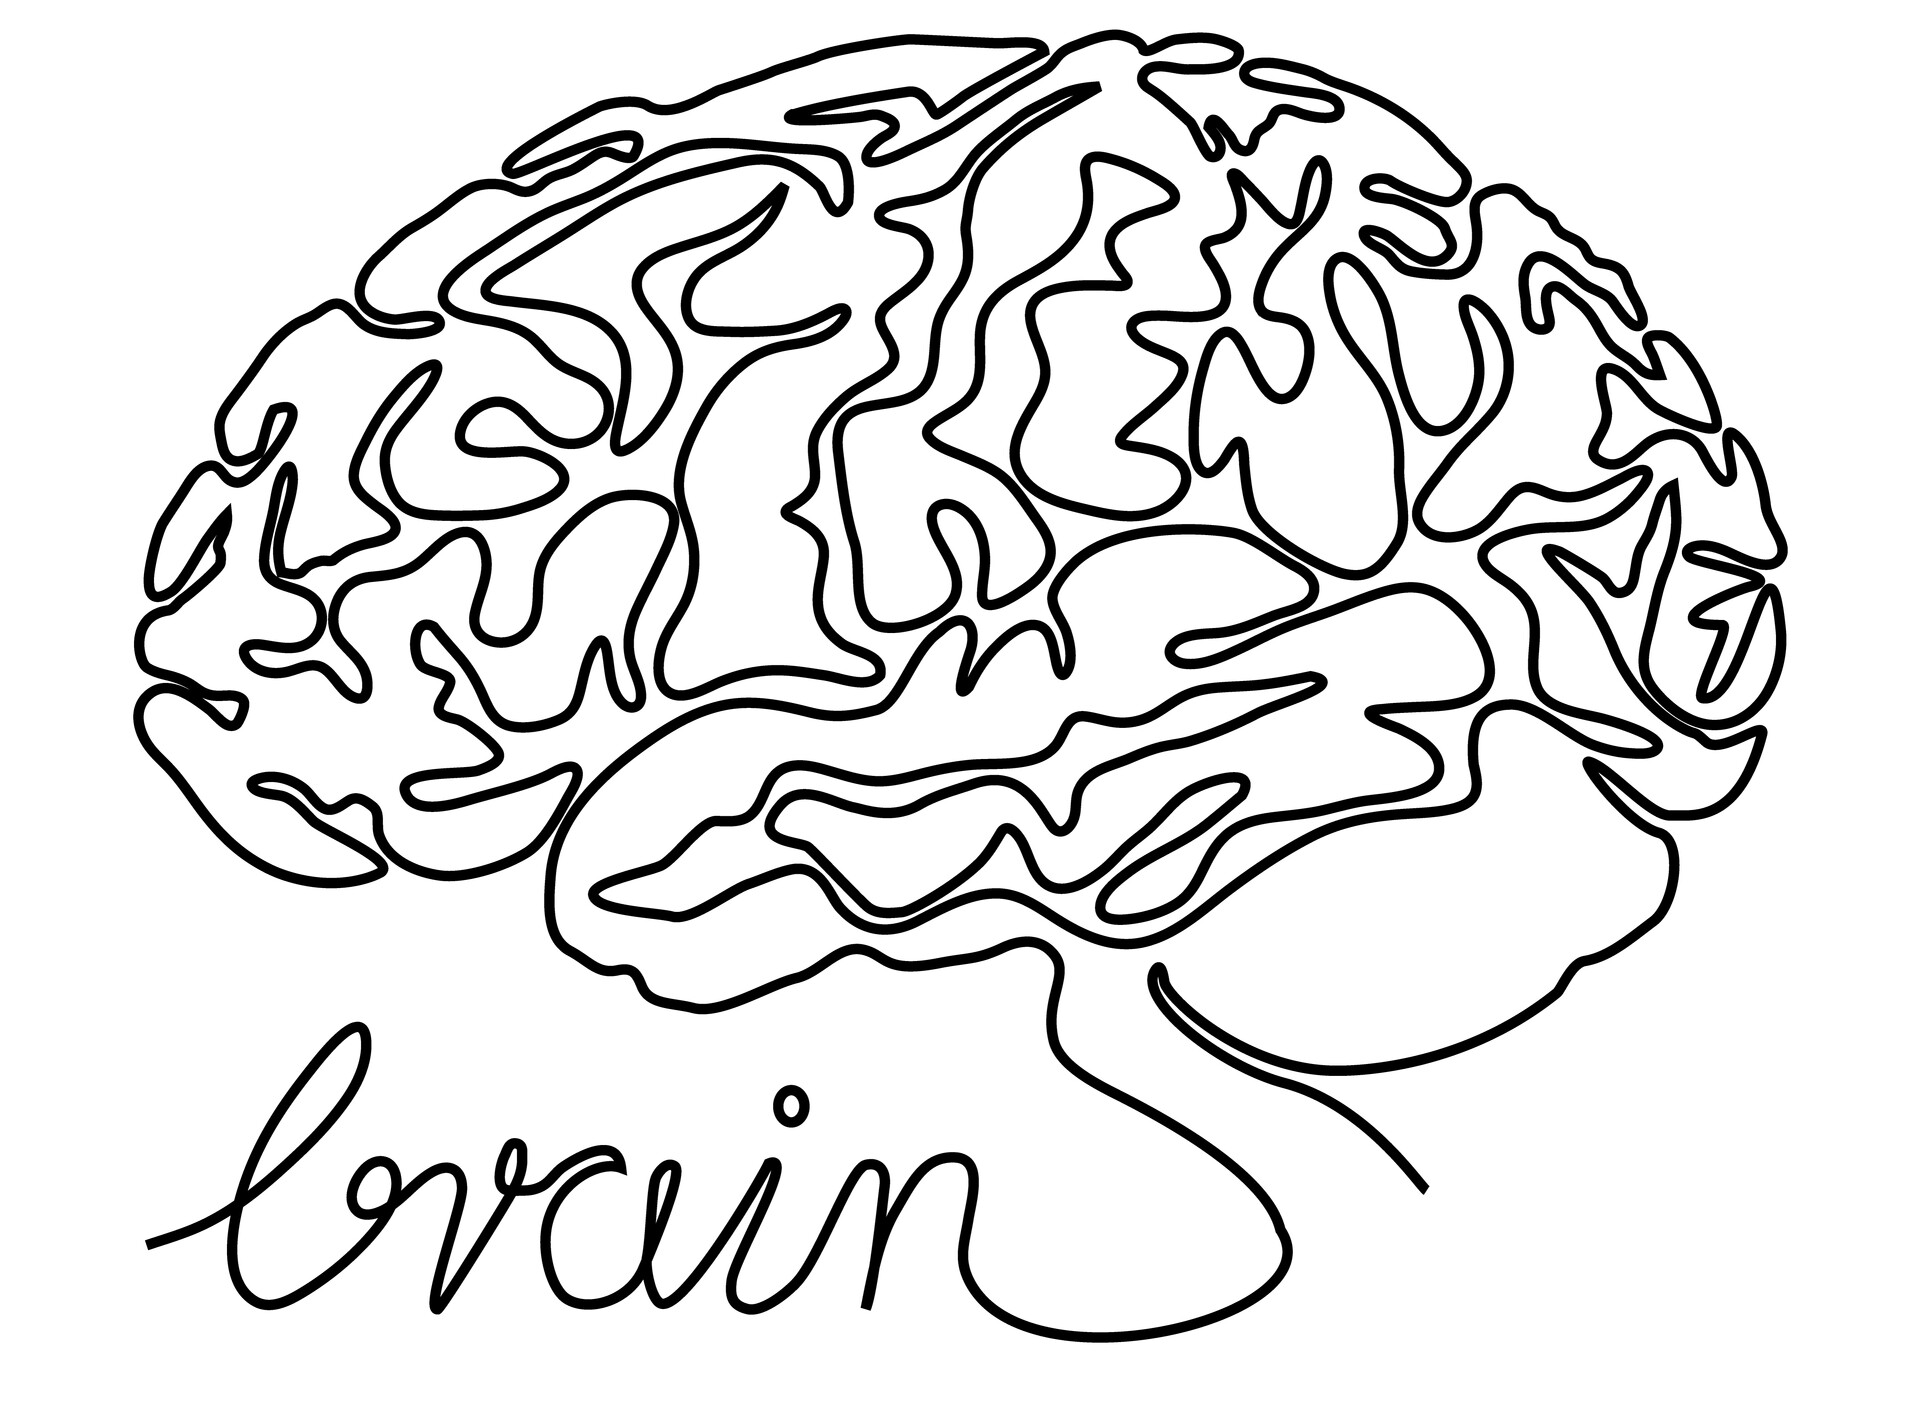 Мозг одной линией